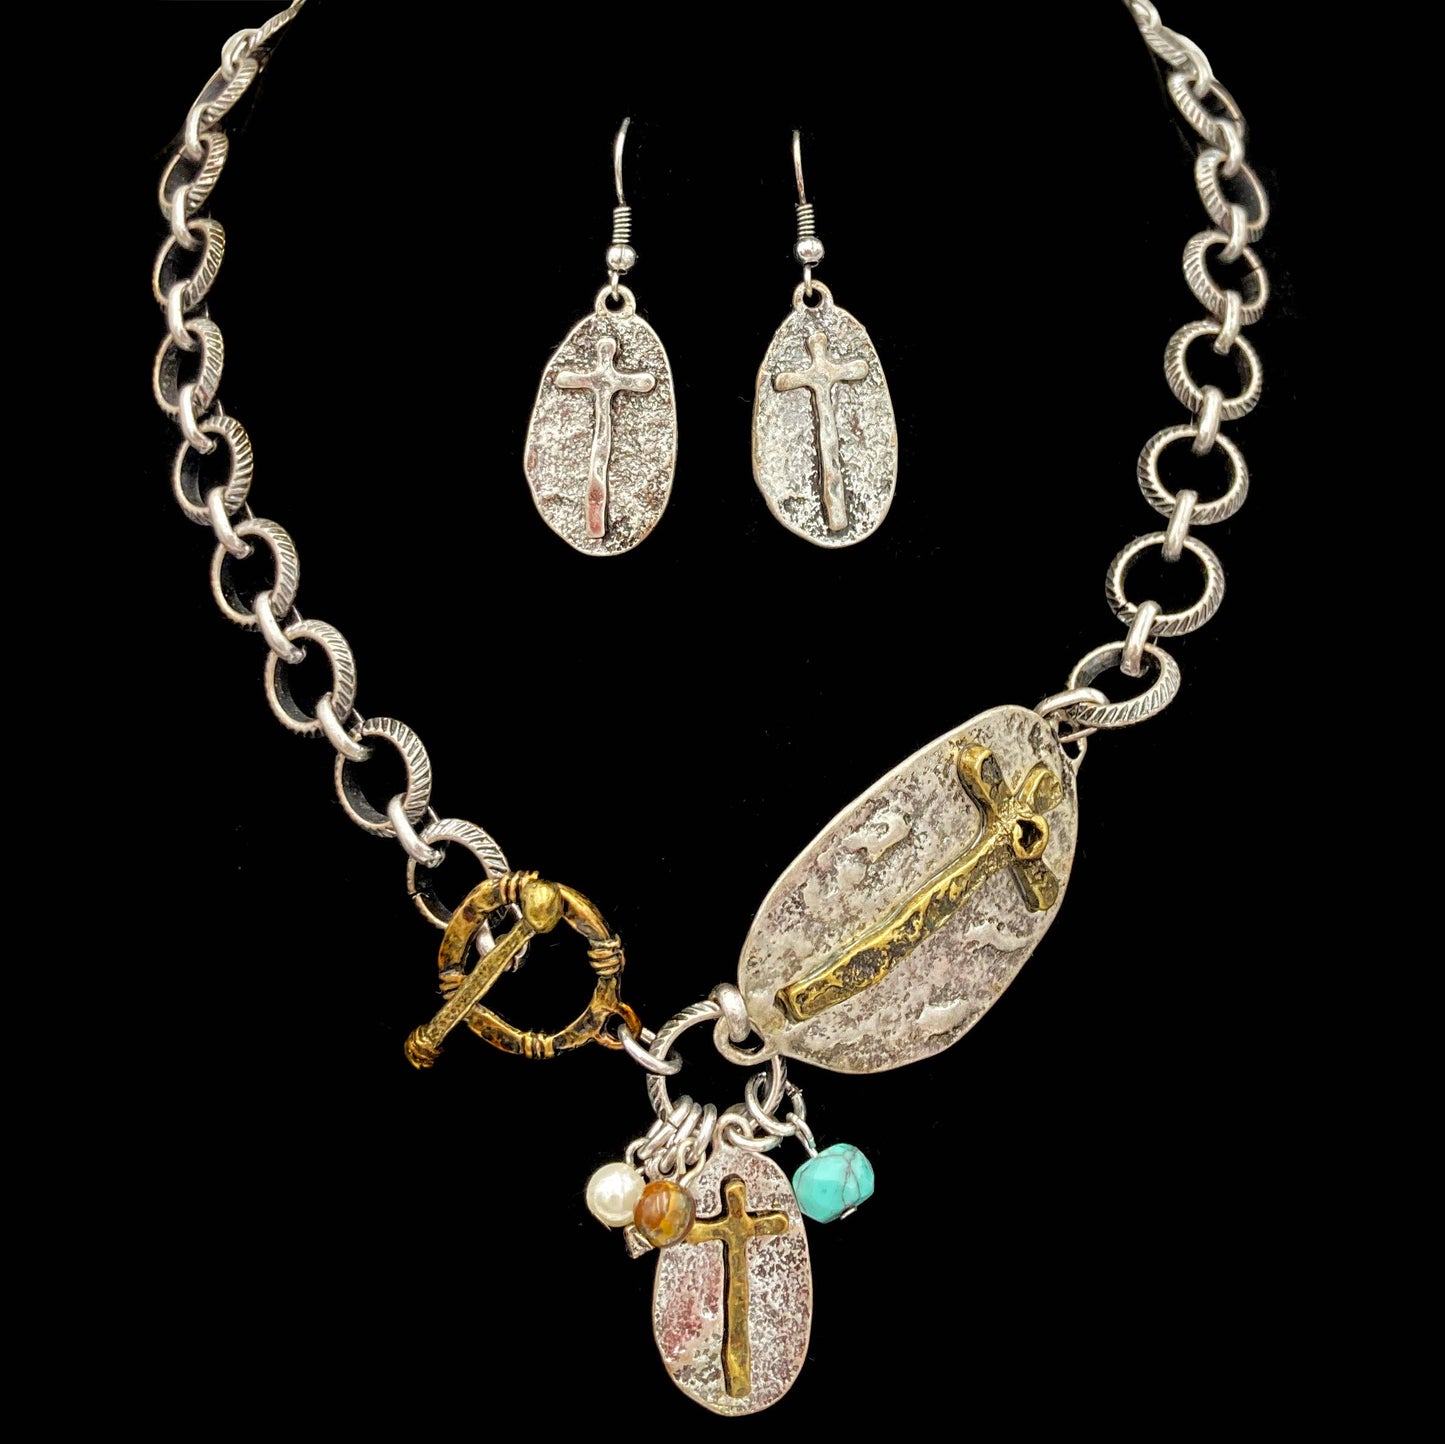 Western Style Cross Necklace & Earring Set